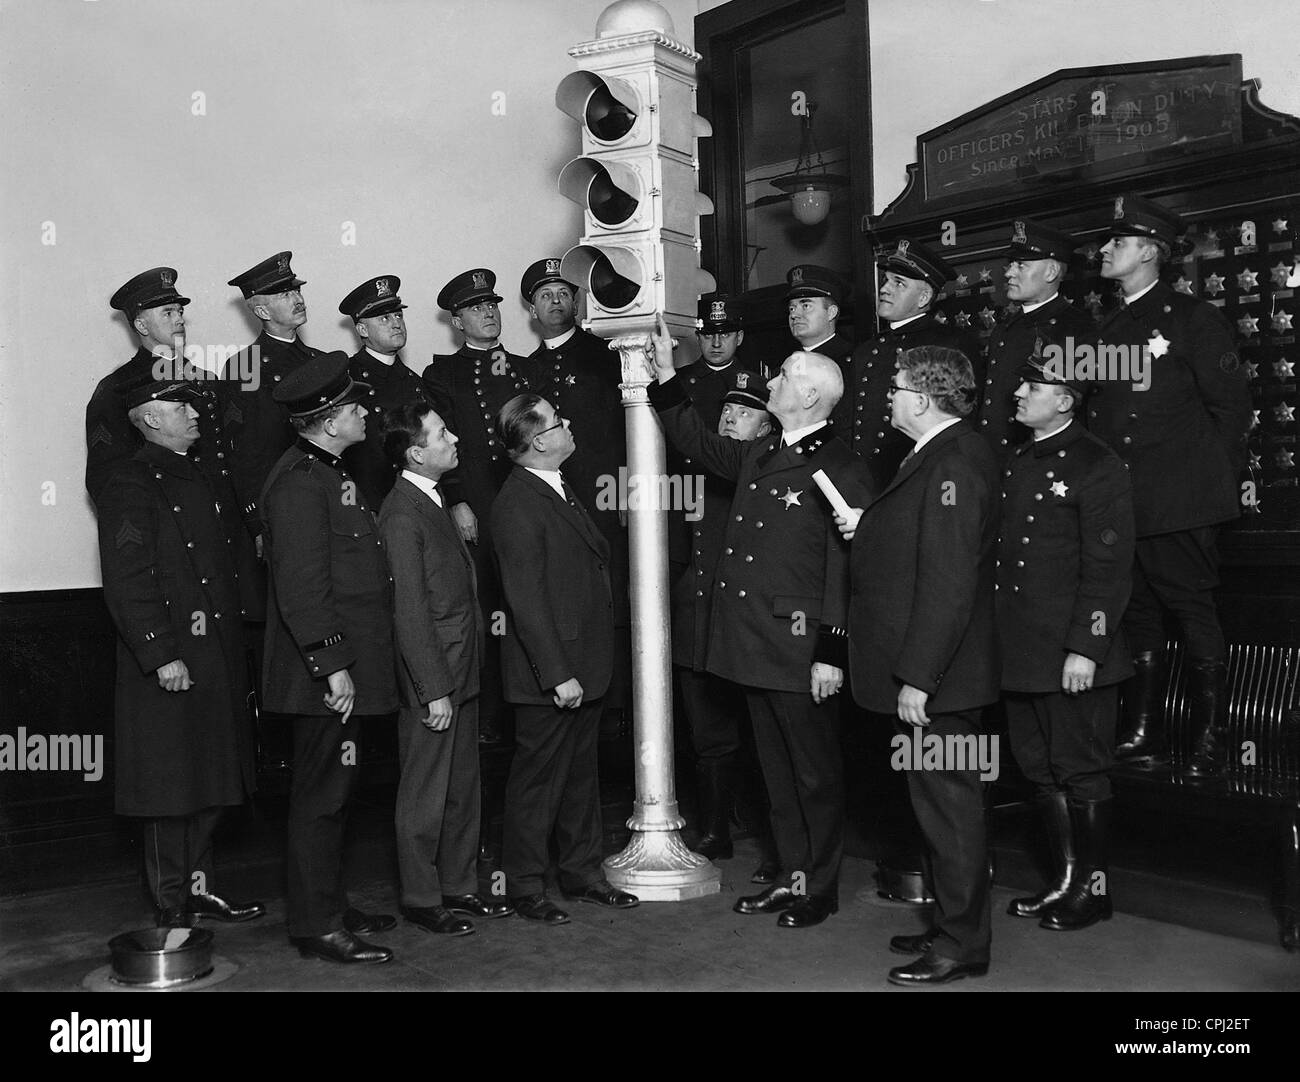 Chef de la police de Chicago présente de nouveaux feux de circulation, 1926 Banque D'Images